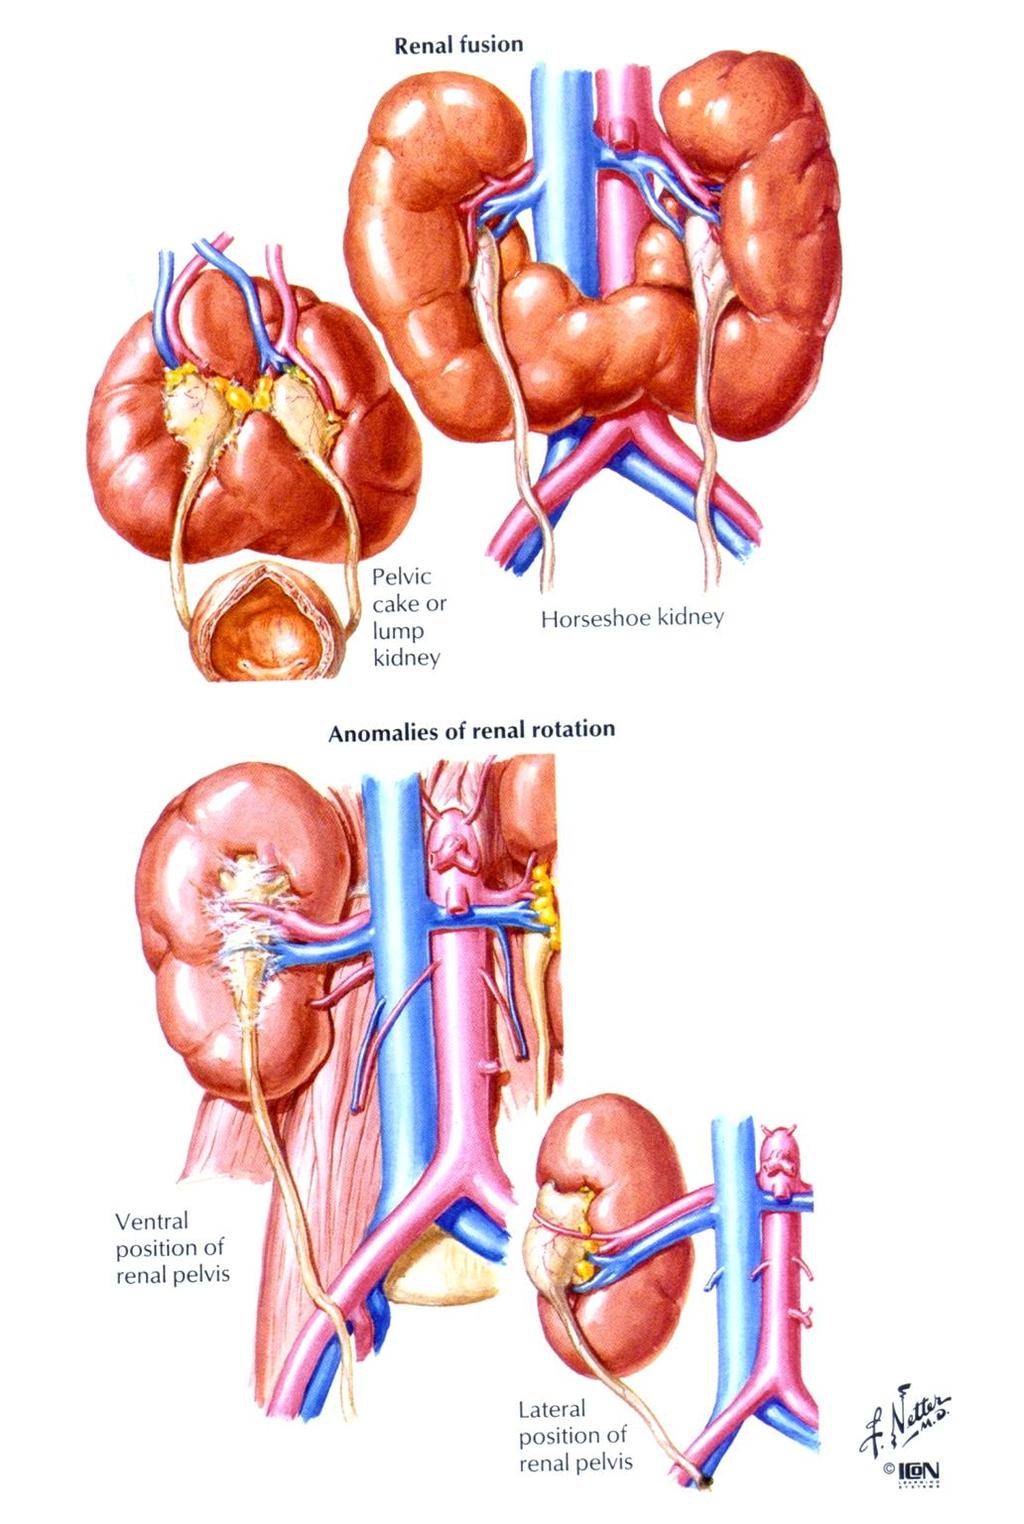 Rosette kidney